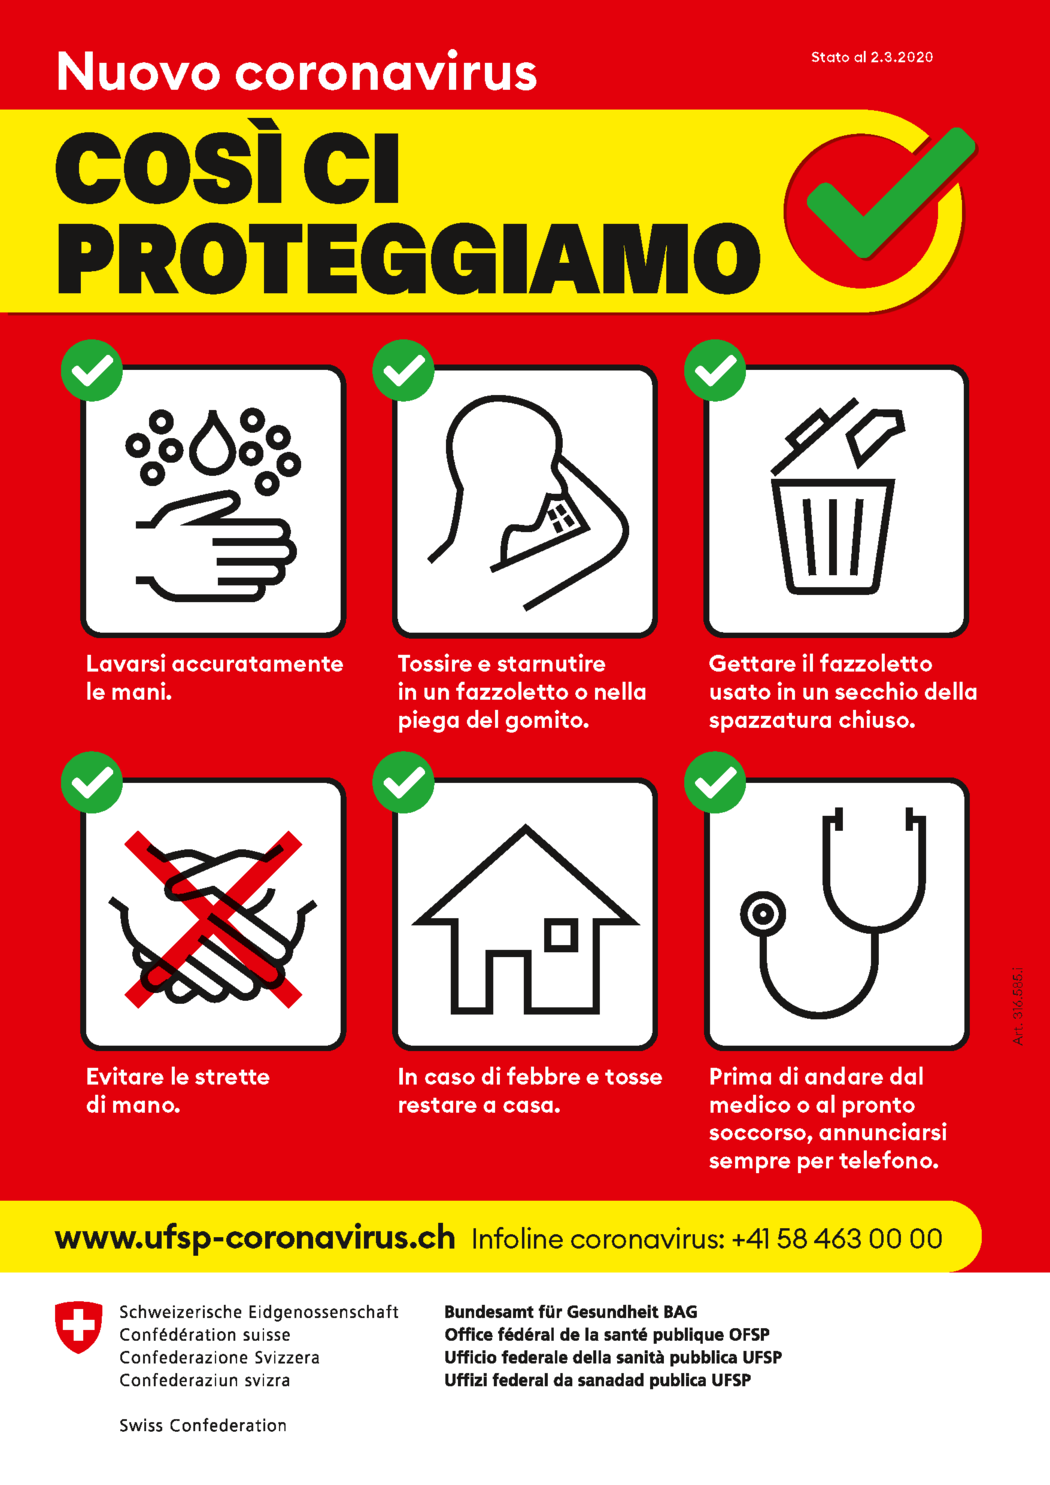 cartellone_nuovo_coronavirus_cosi_ci_proteggiamo.png